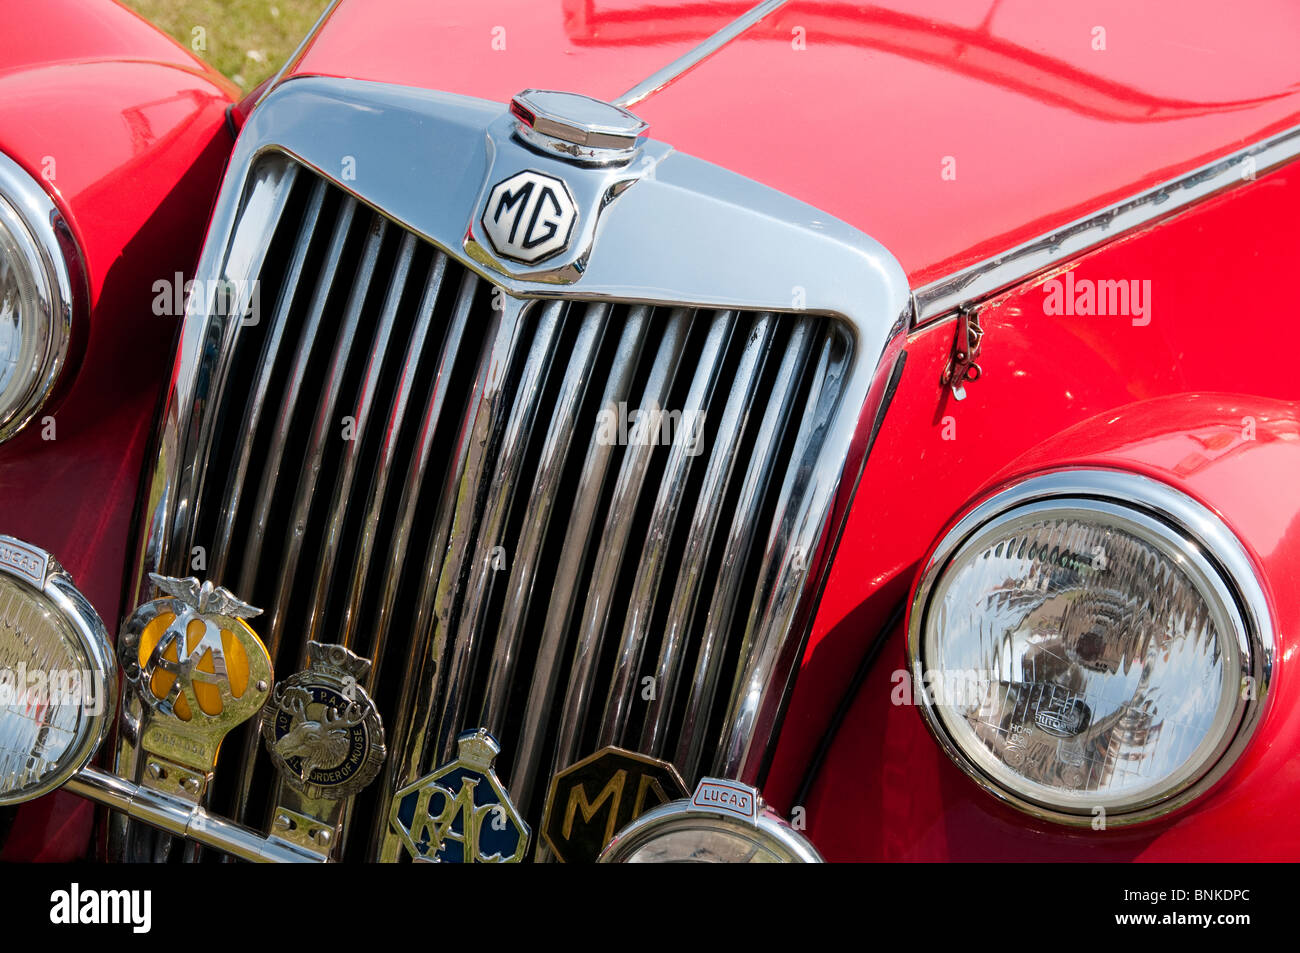 Grille de calandre d'une voiture de sport MG rouge Banque D'Images